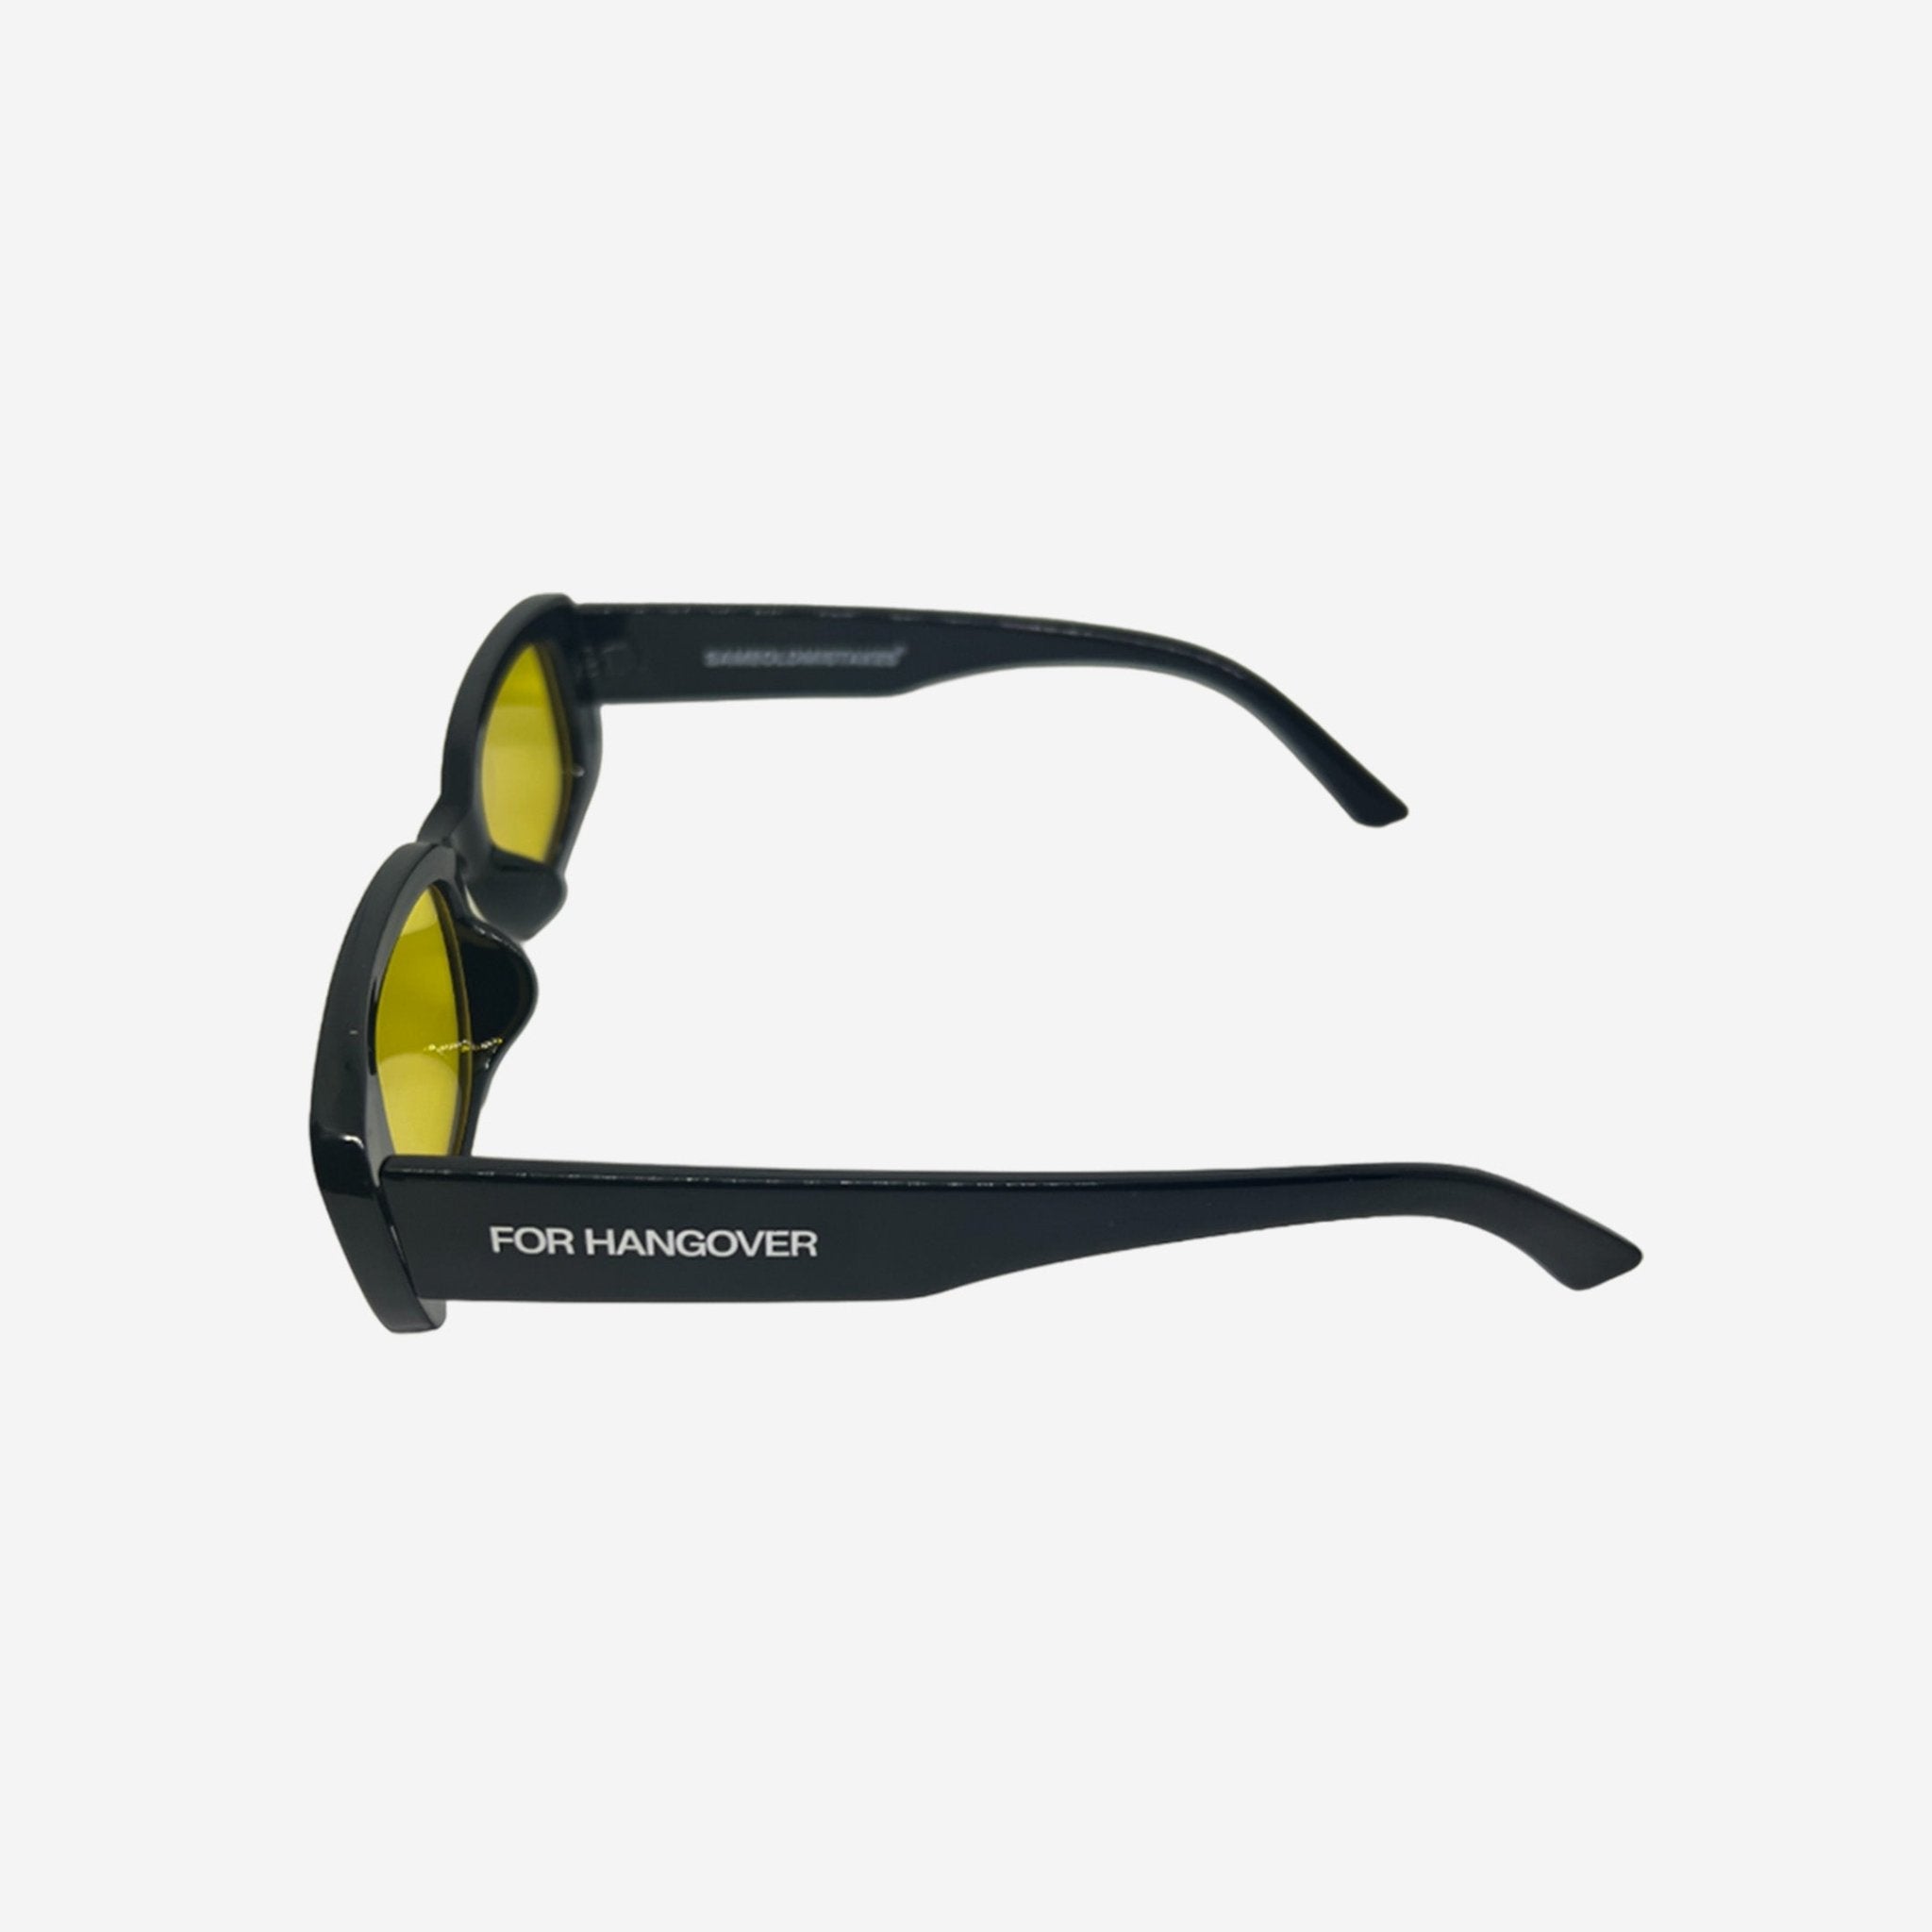 For hangover sunglasses yellow - sameoldmistakes